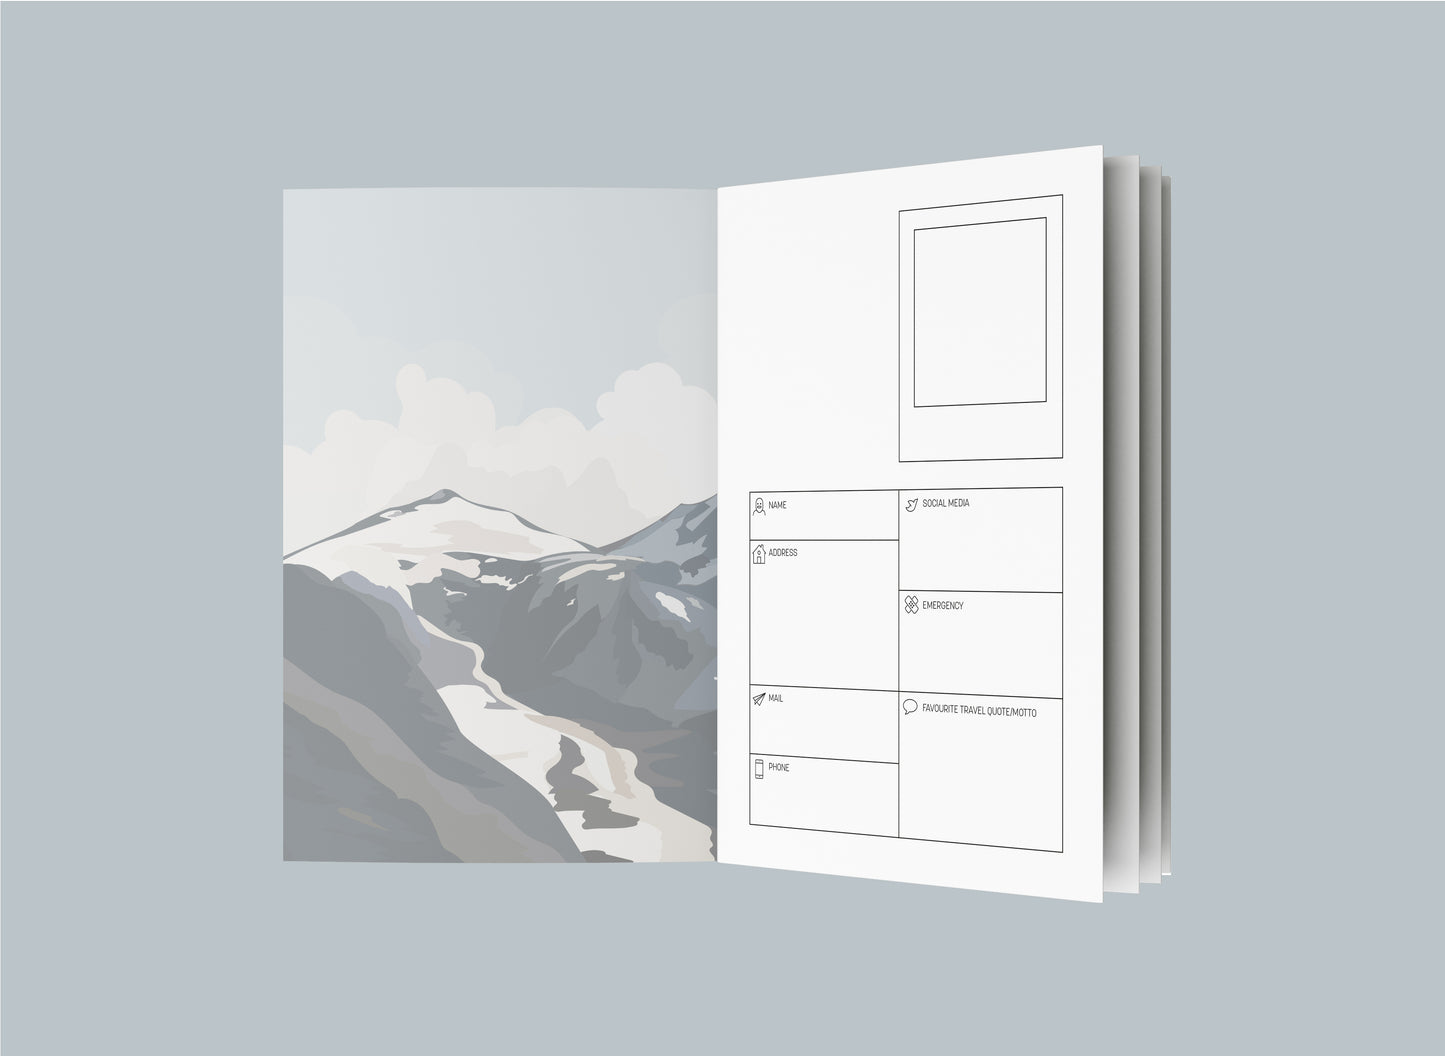 Reisetagebuch | Wanderlust Alpen | A5 | 100 Seiten | 12 Wochen